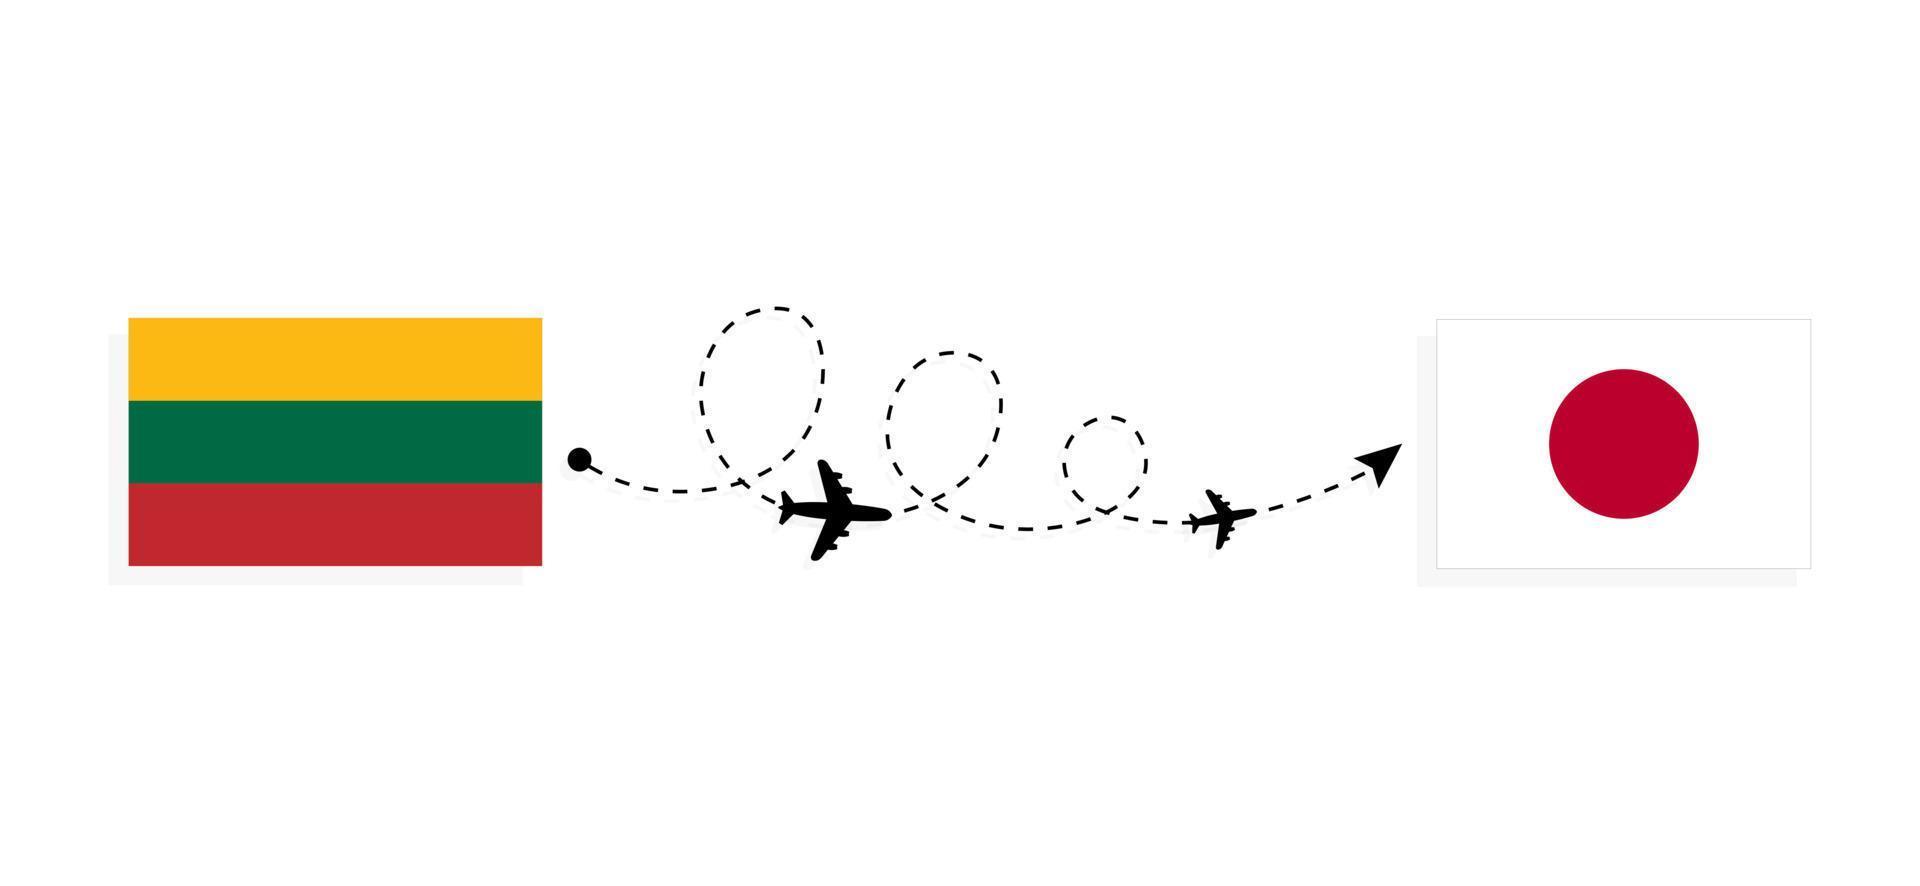 vol et voyage de la lituanie au japon par concept de voyage en avion de passagers vecteur